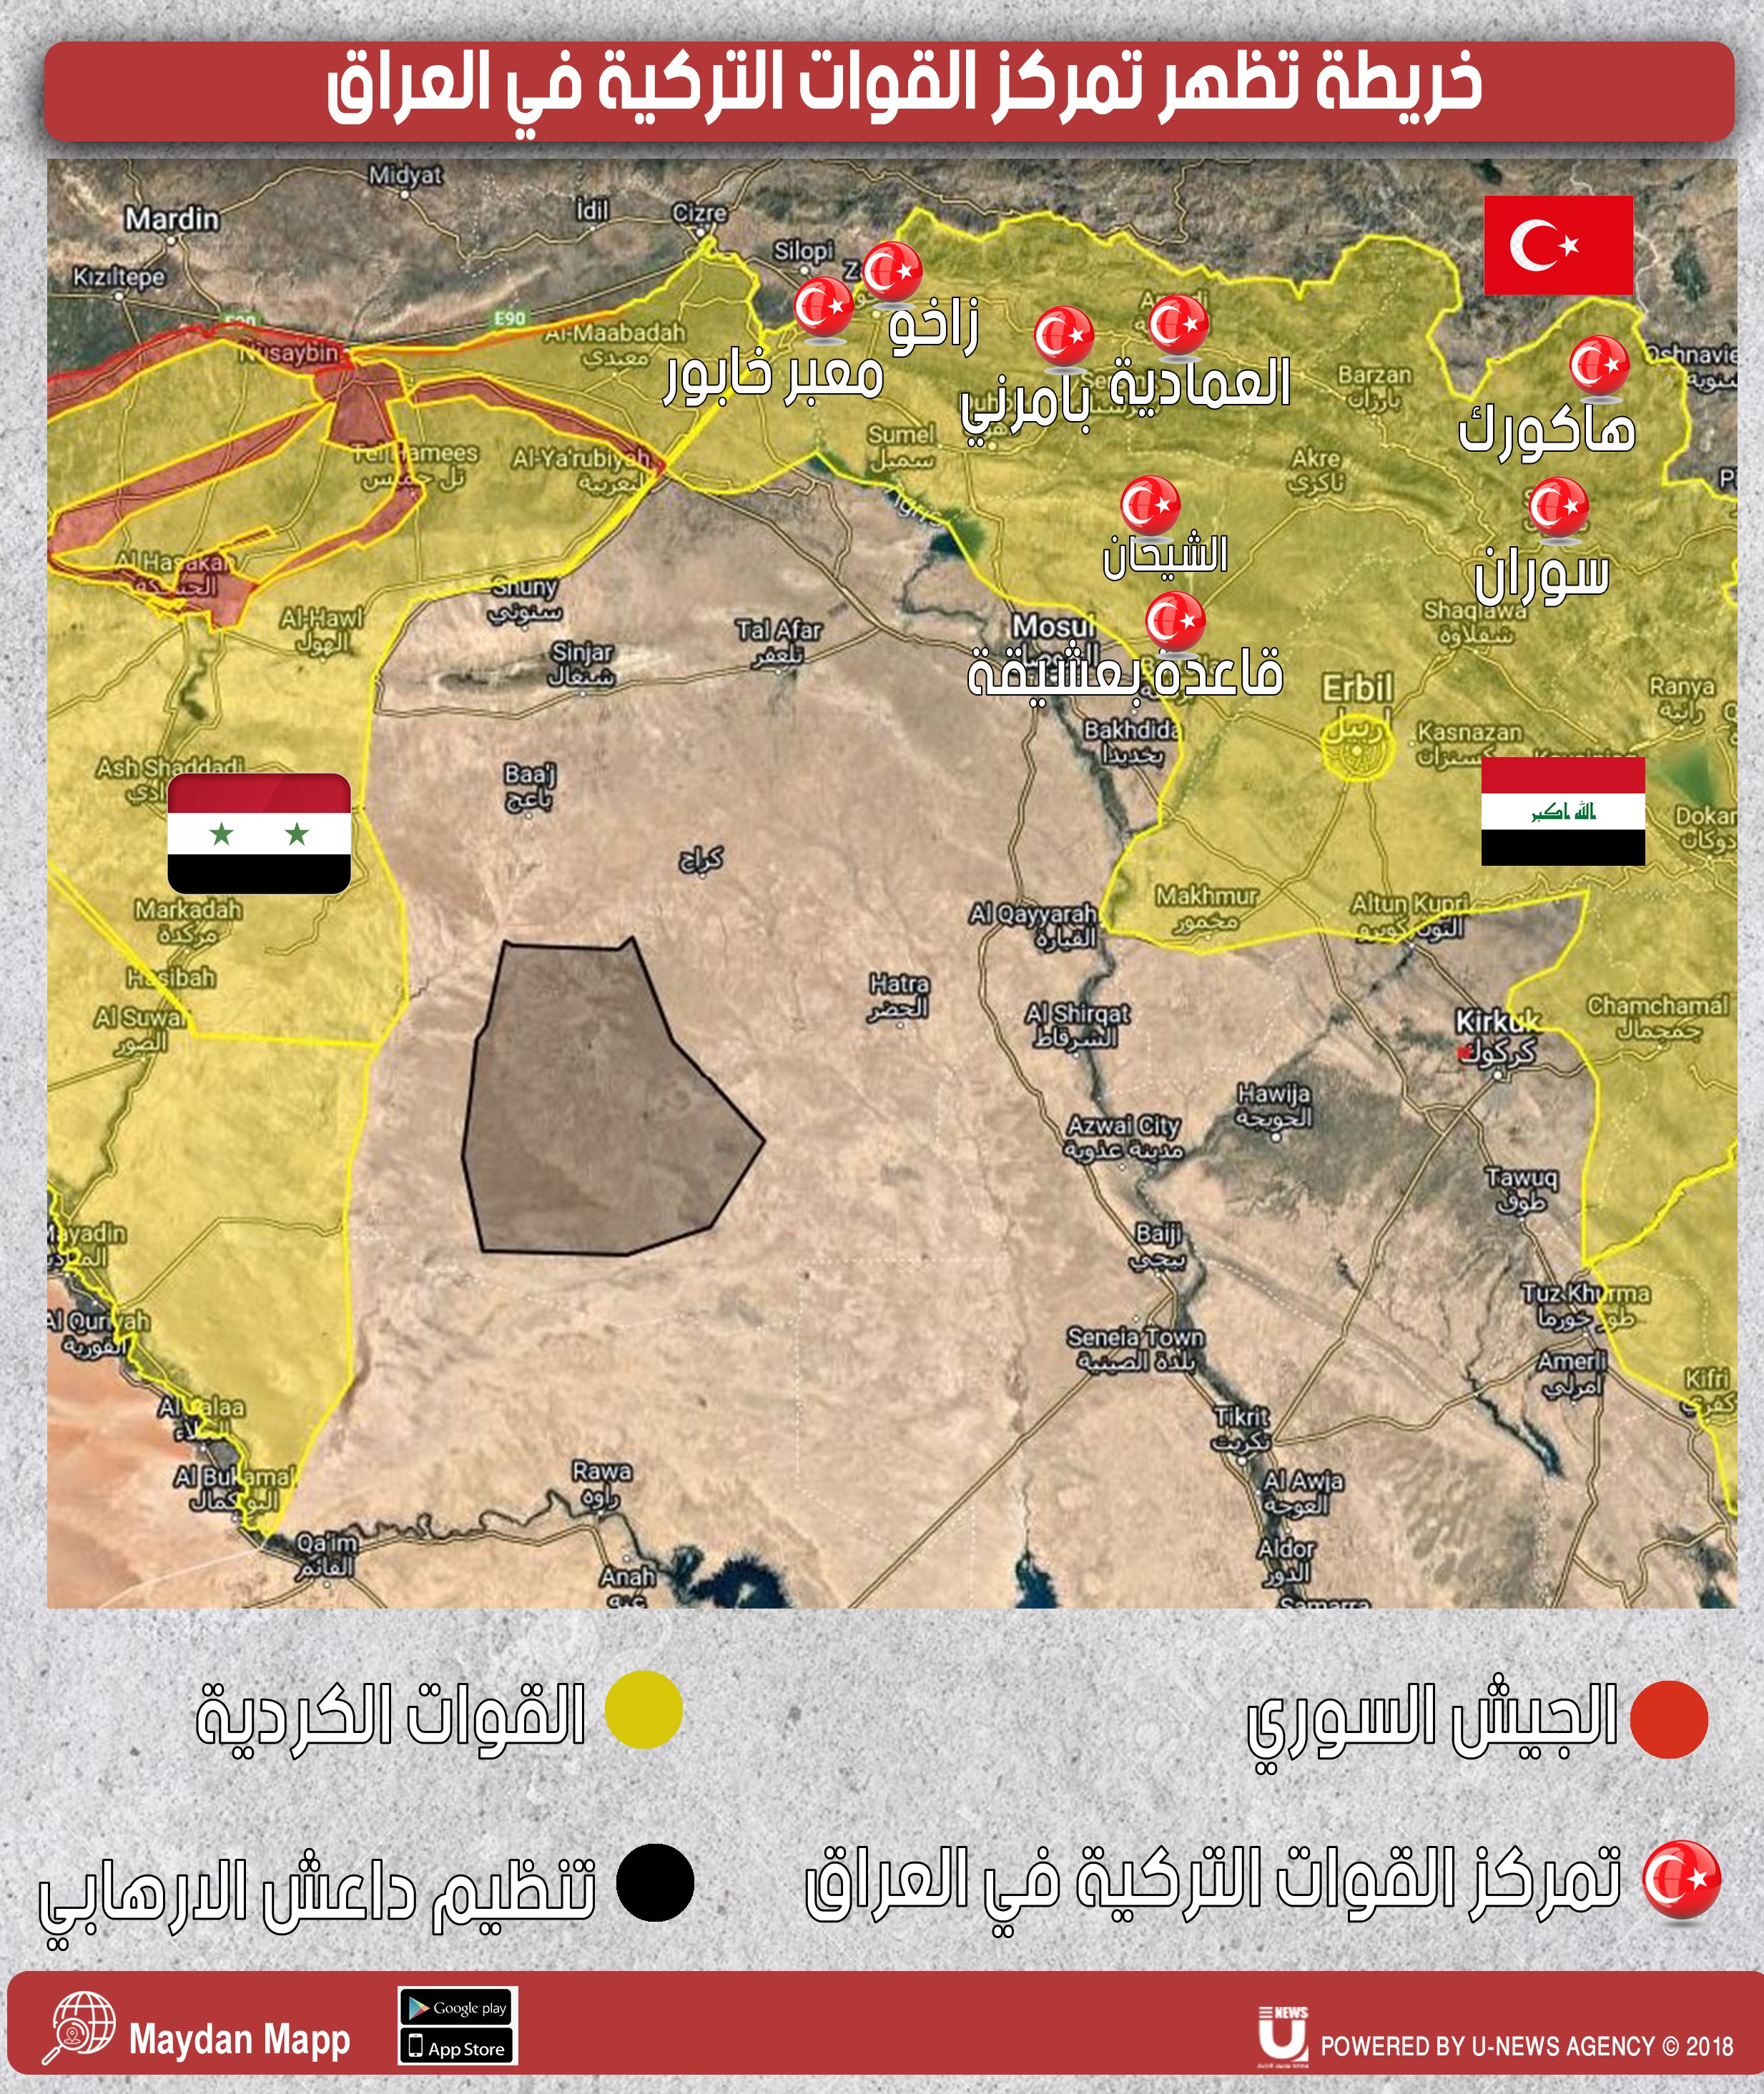 العراق _ خريطة تظهر تمركز القوات التركية في محافظتي أربيل ودهوك في العراق